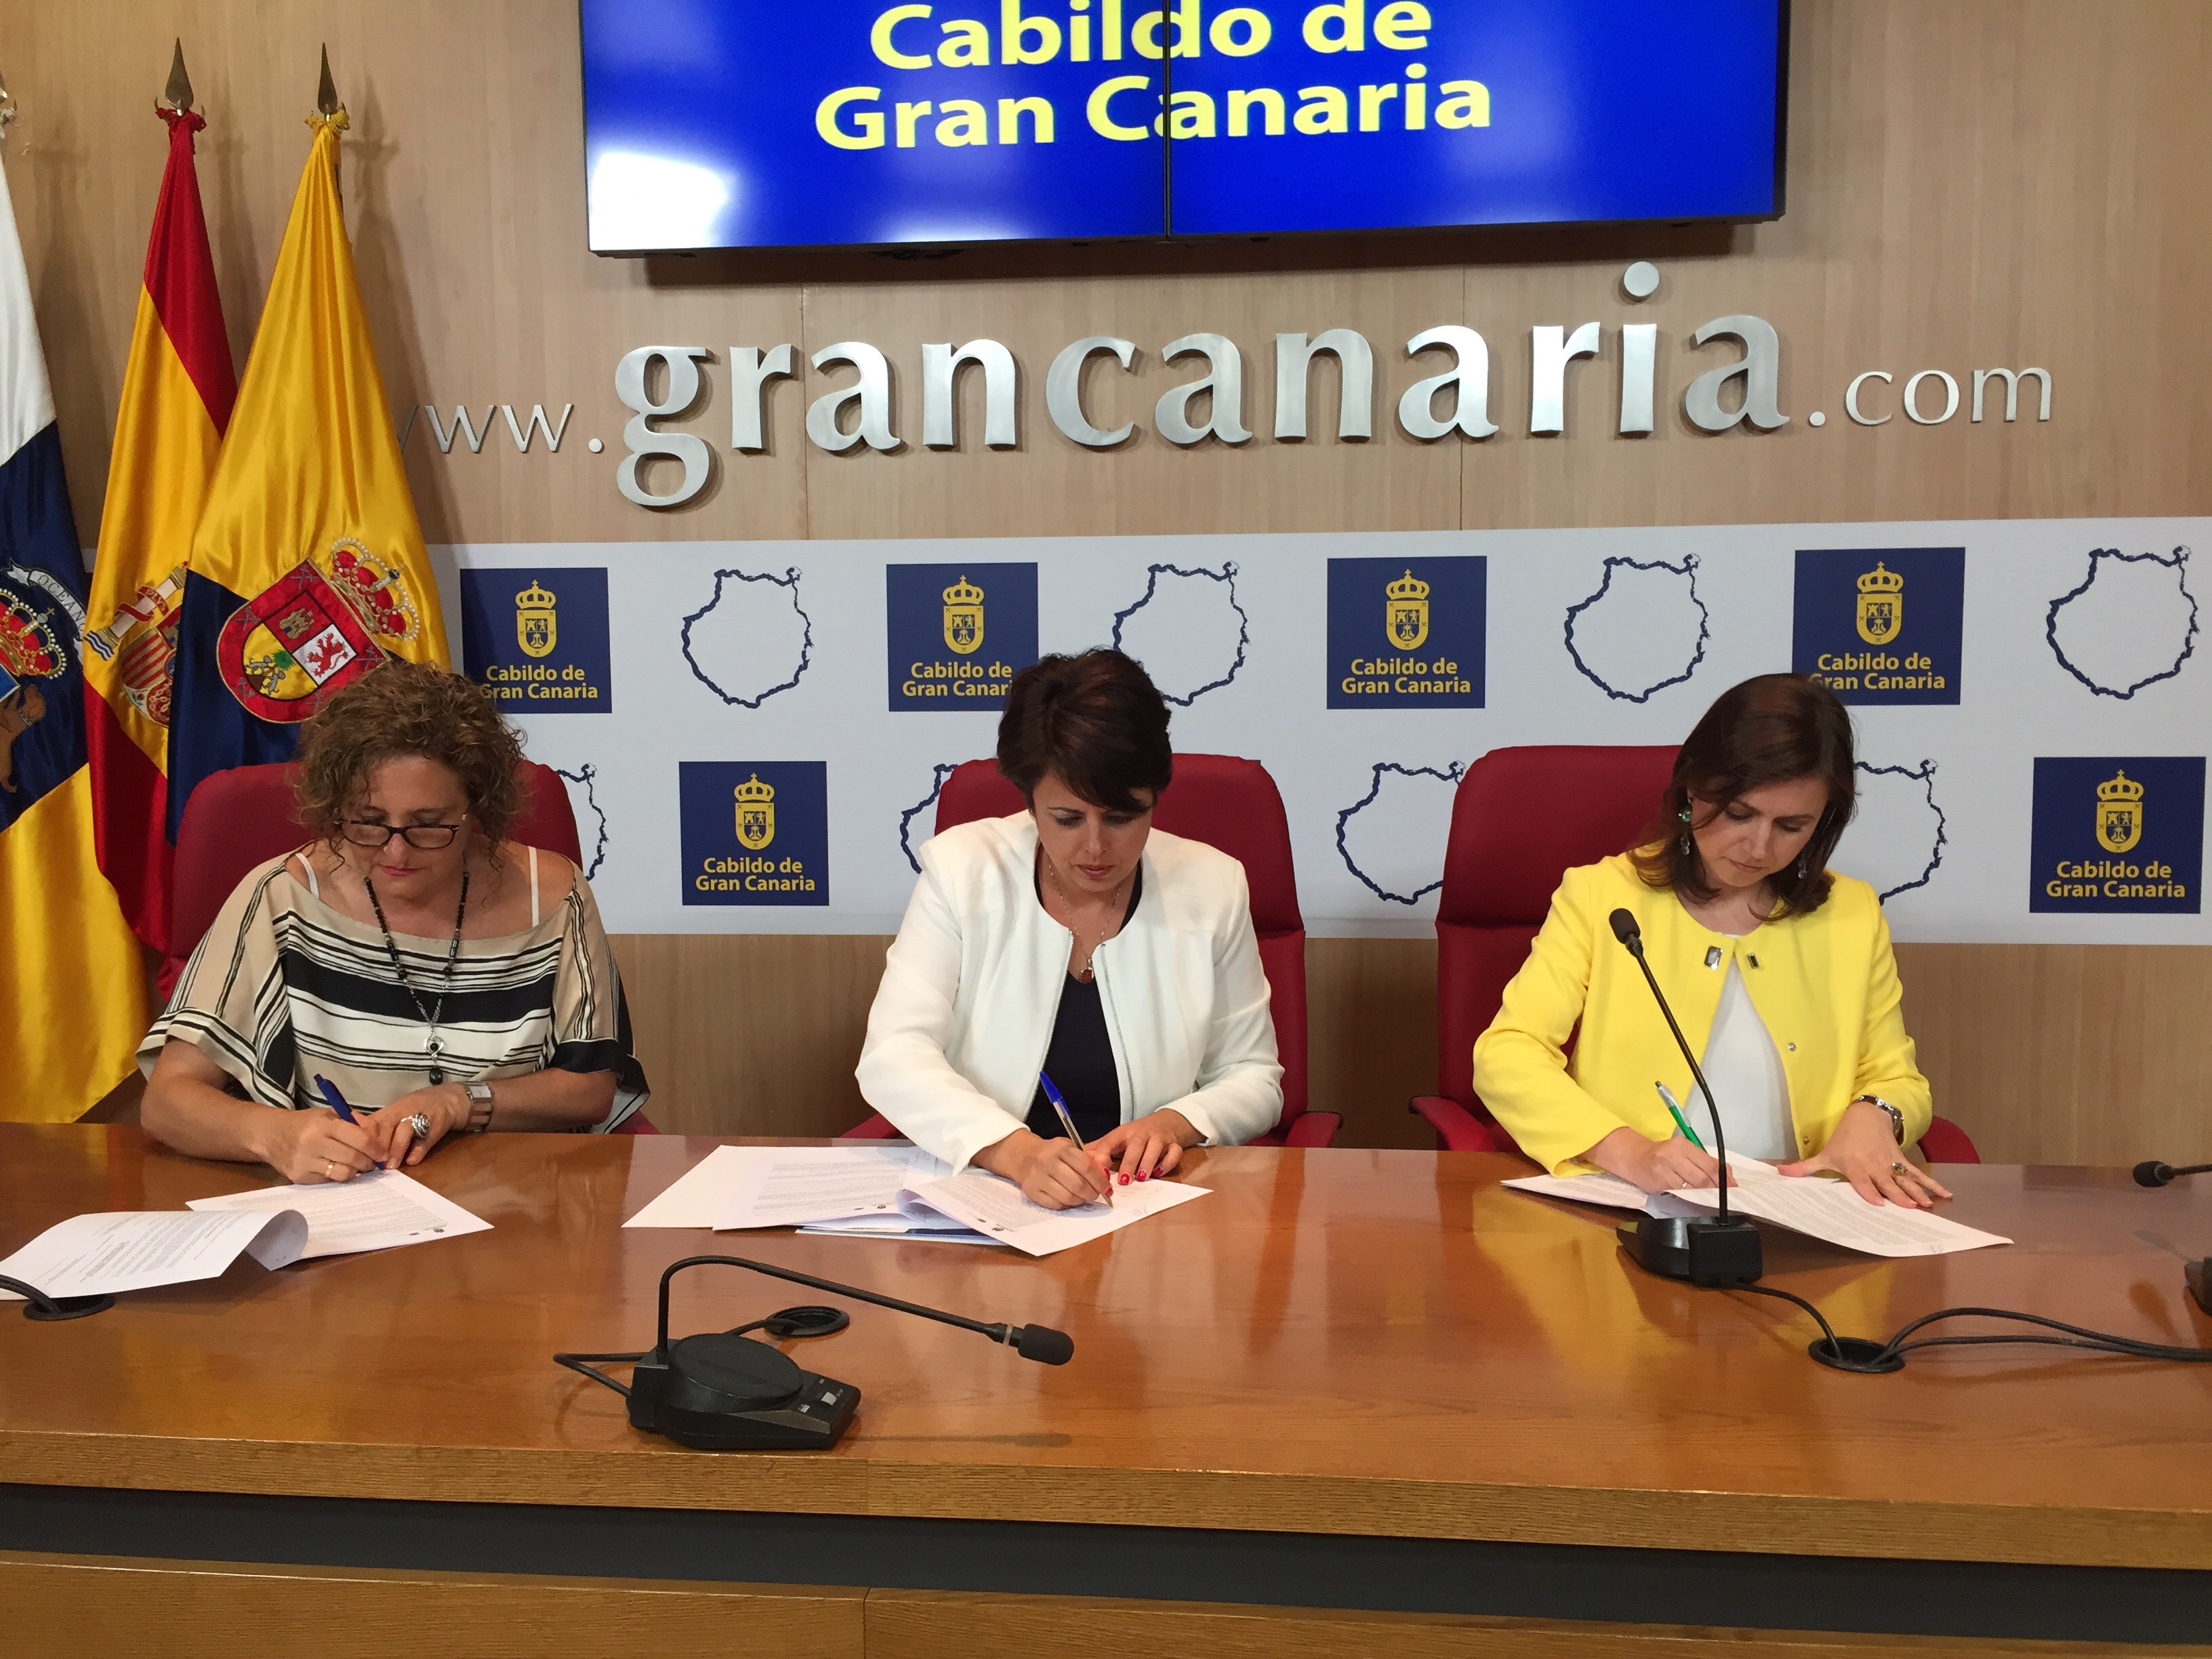 El Cabildo aporta 50.000 euros al Ayuntamiento de Telde para la reforma del Horno Justo Cubas de alfarería